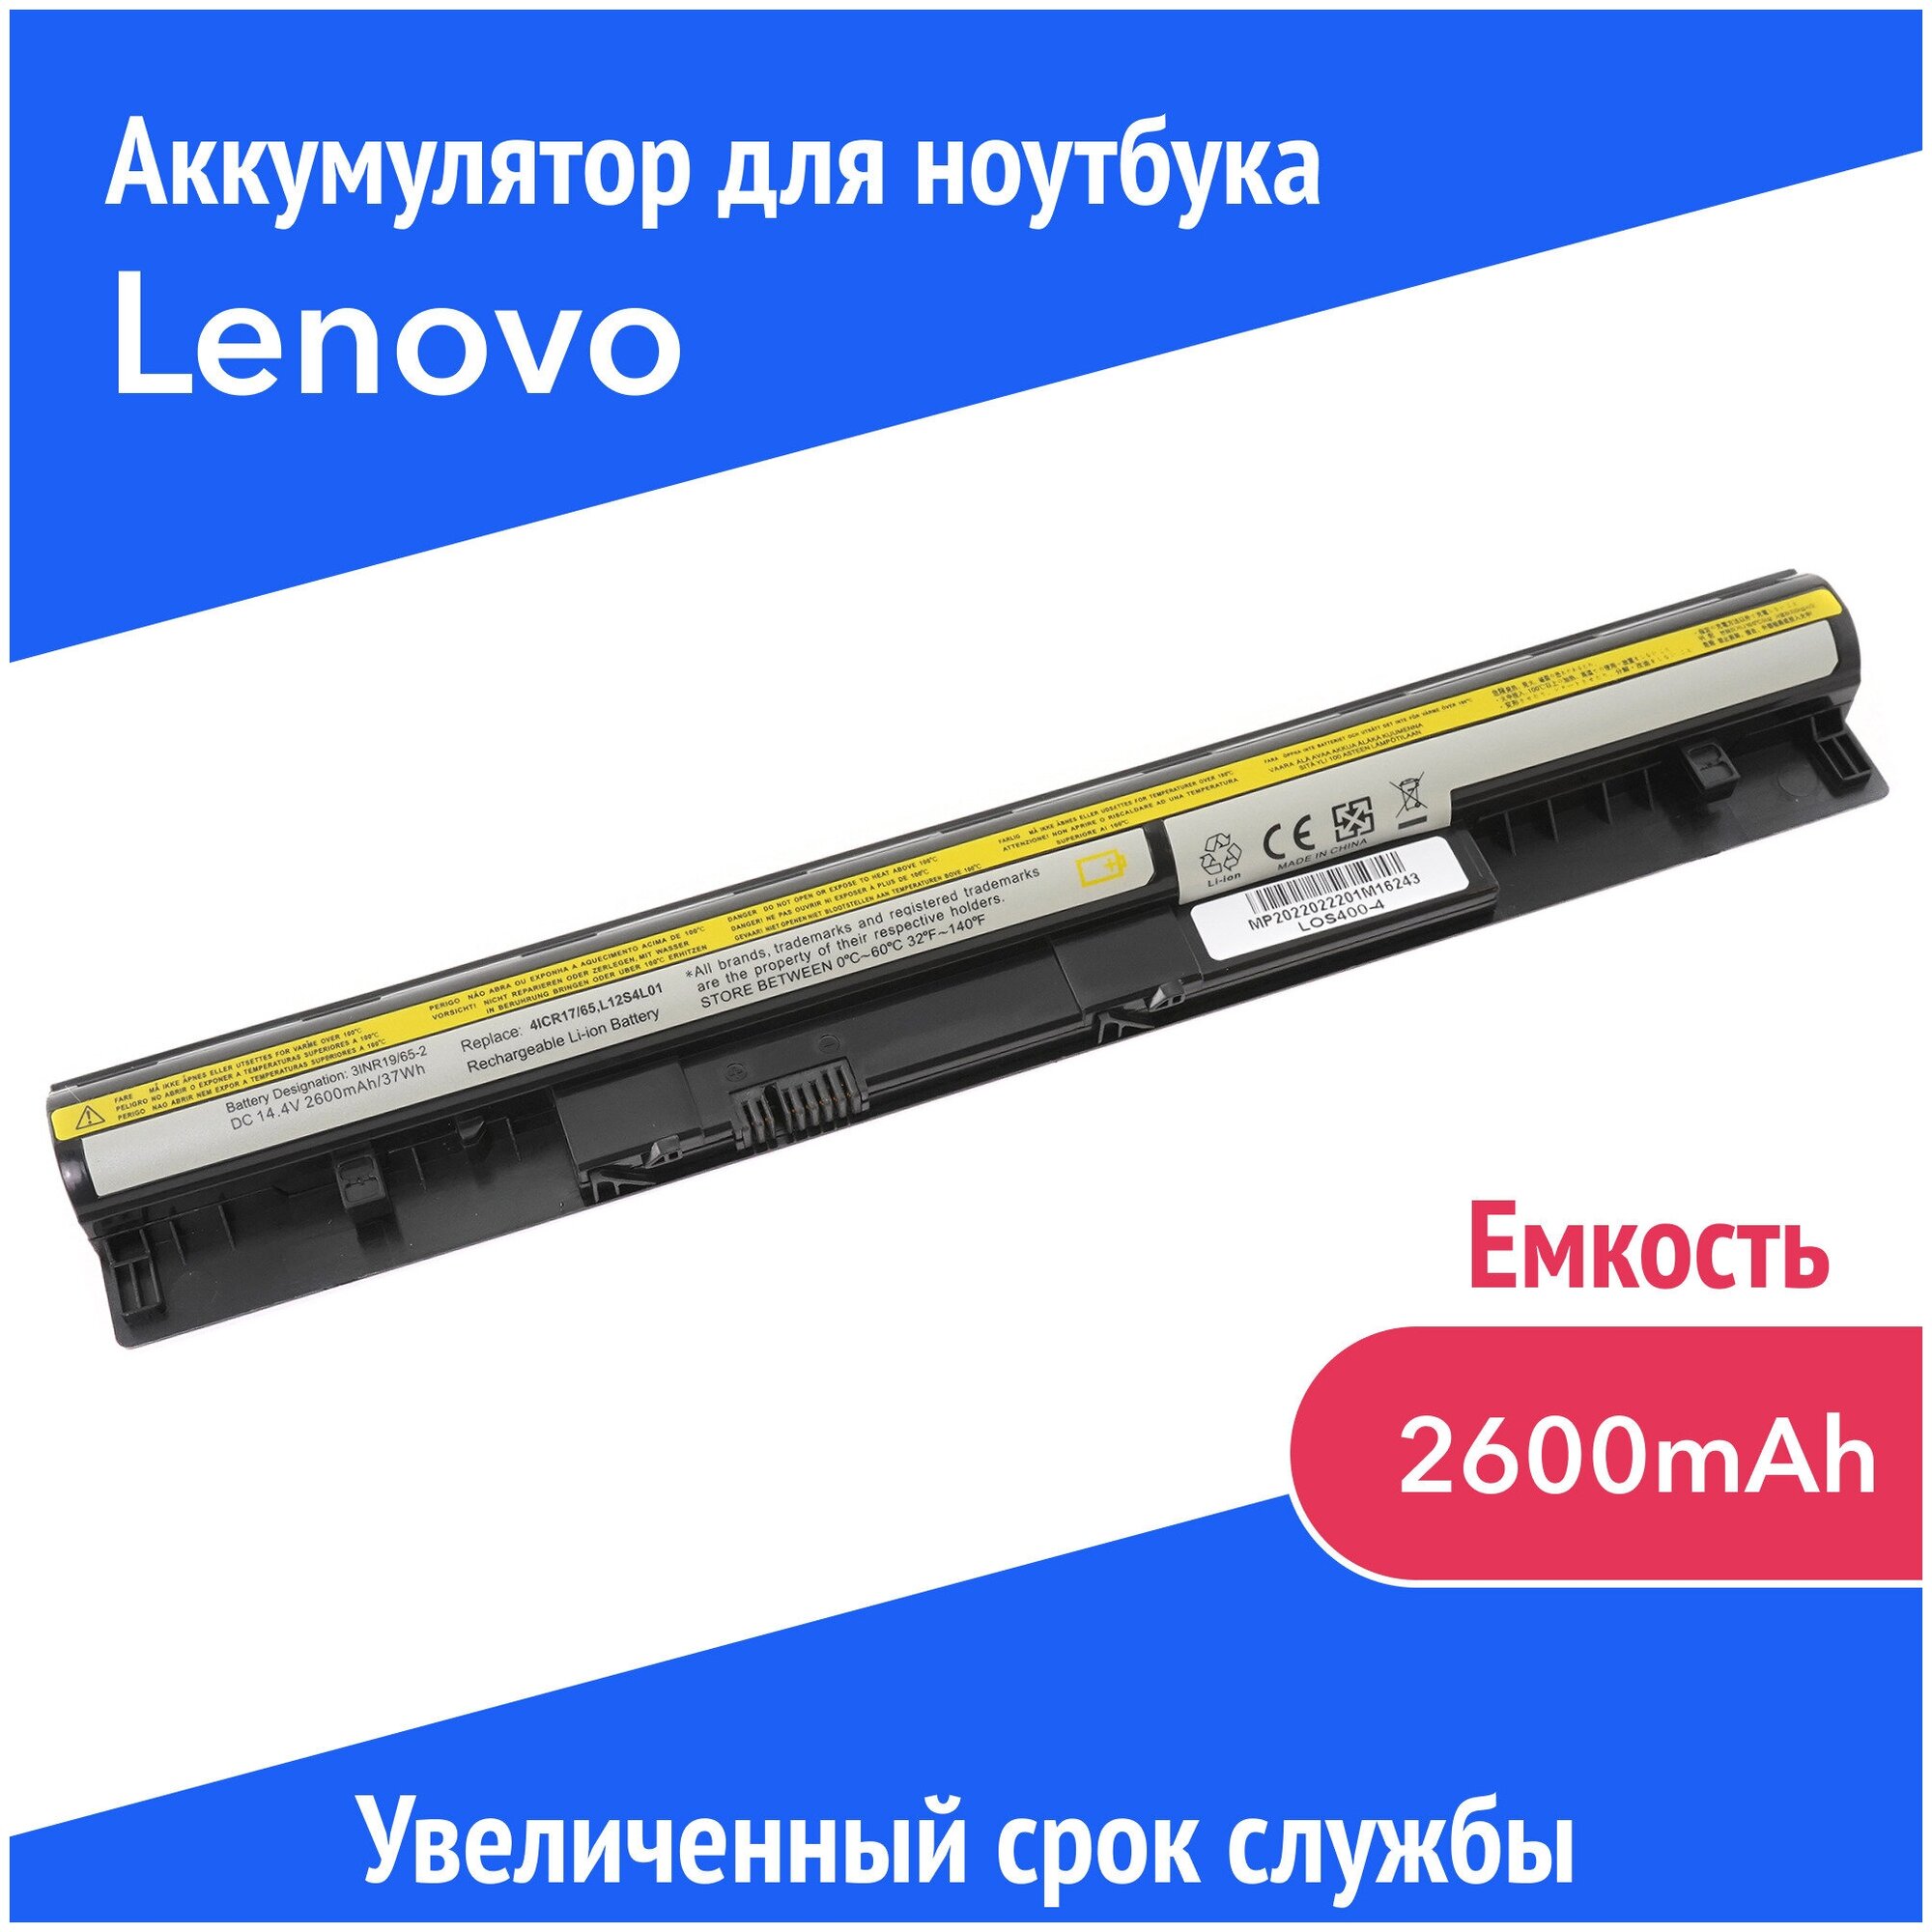 Аккумулятор L12S4L01 для ноутбука Lenovo IdeaPad S300 / S310 / S400 / S410 / S415 (L12S4Z01, 4ICR17/65) 2600mAh